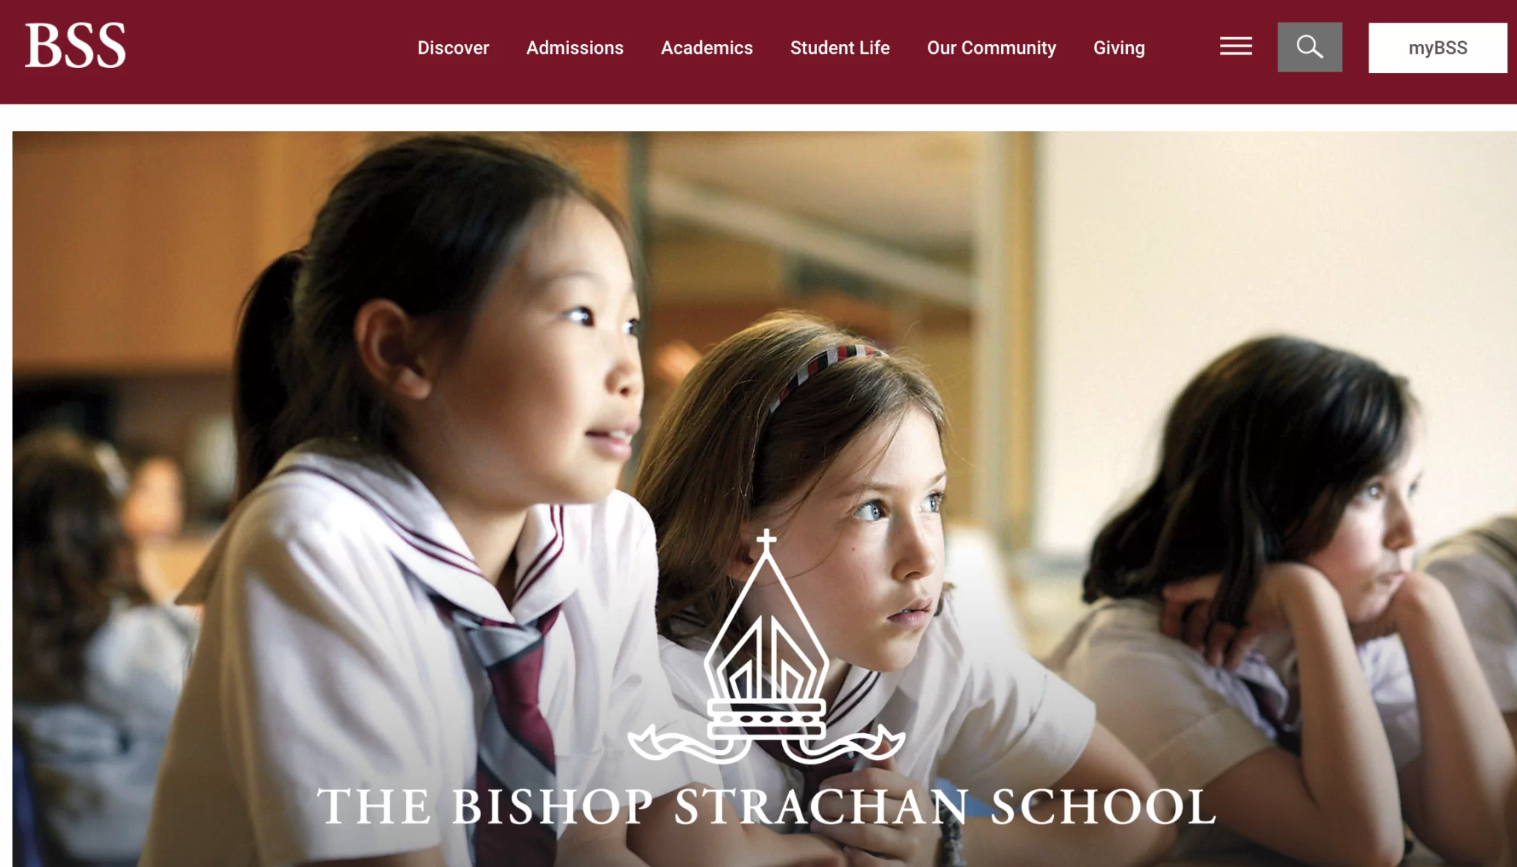 The Bishop Strachan School's website